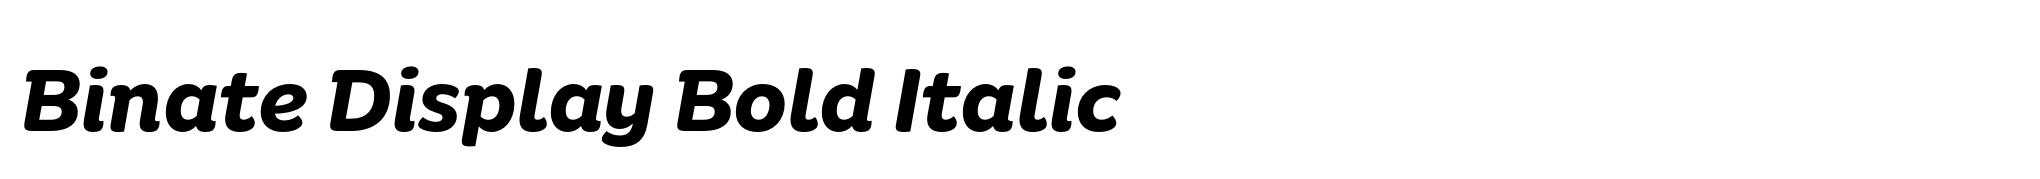 Binate Display Bold Italic image